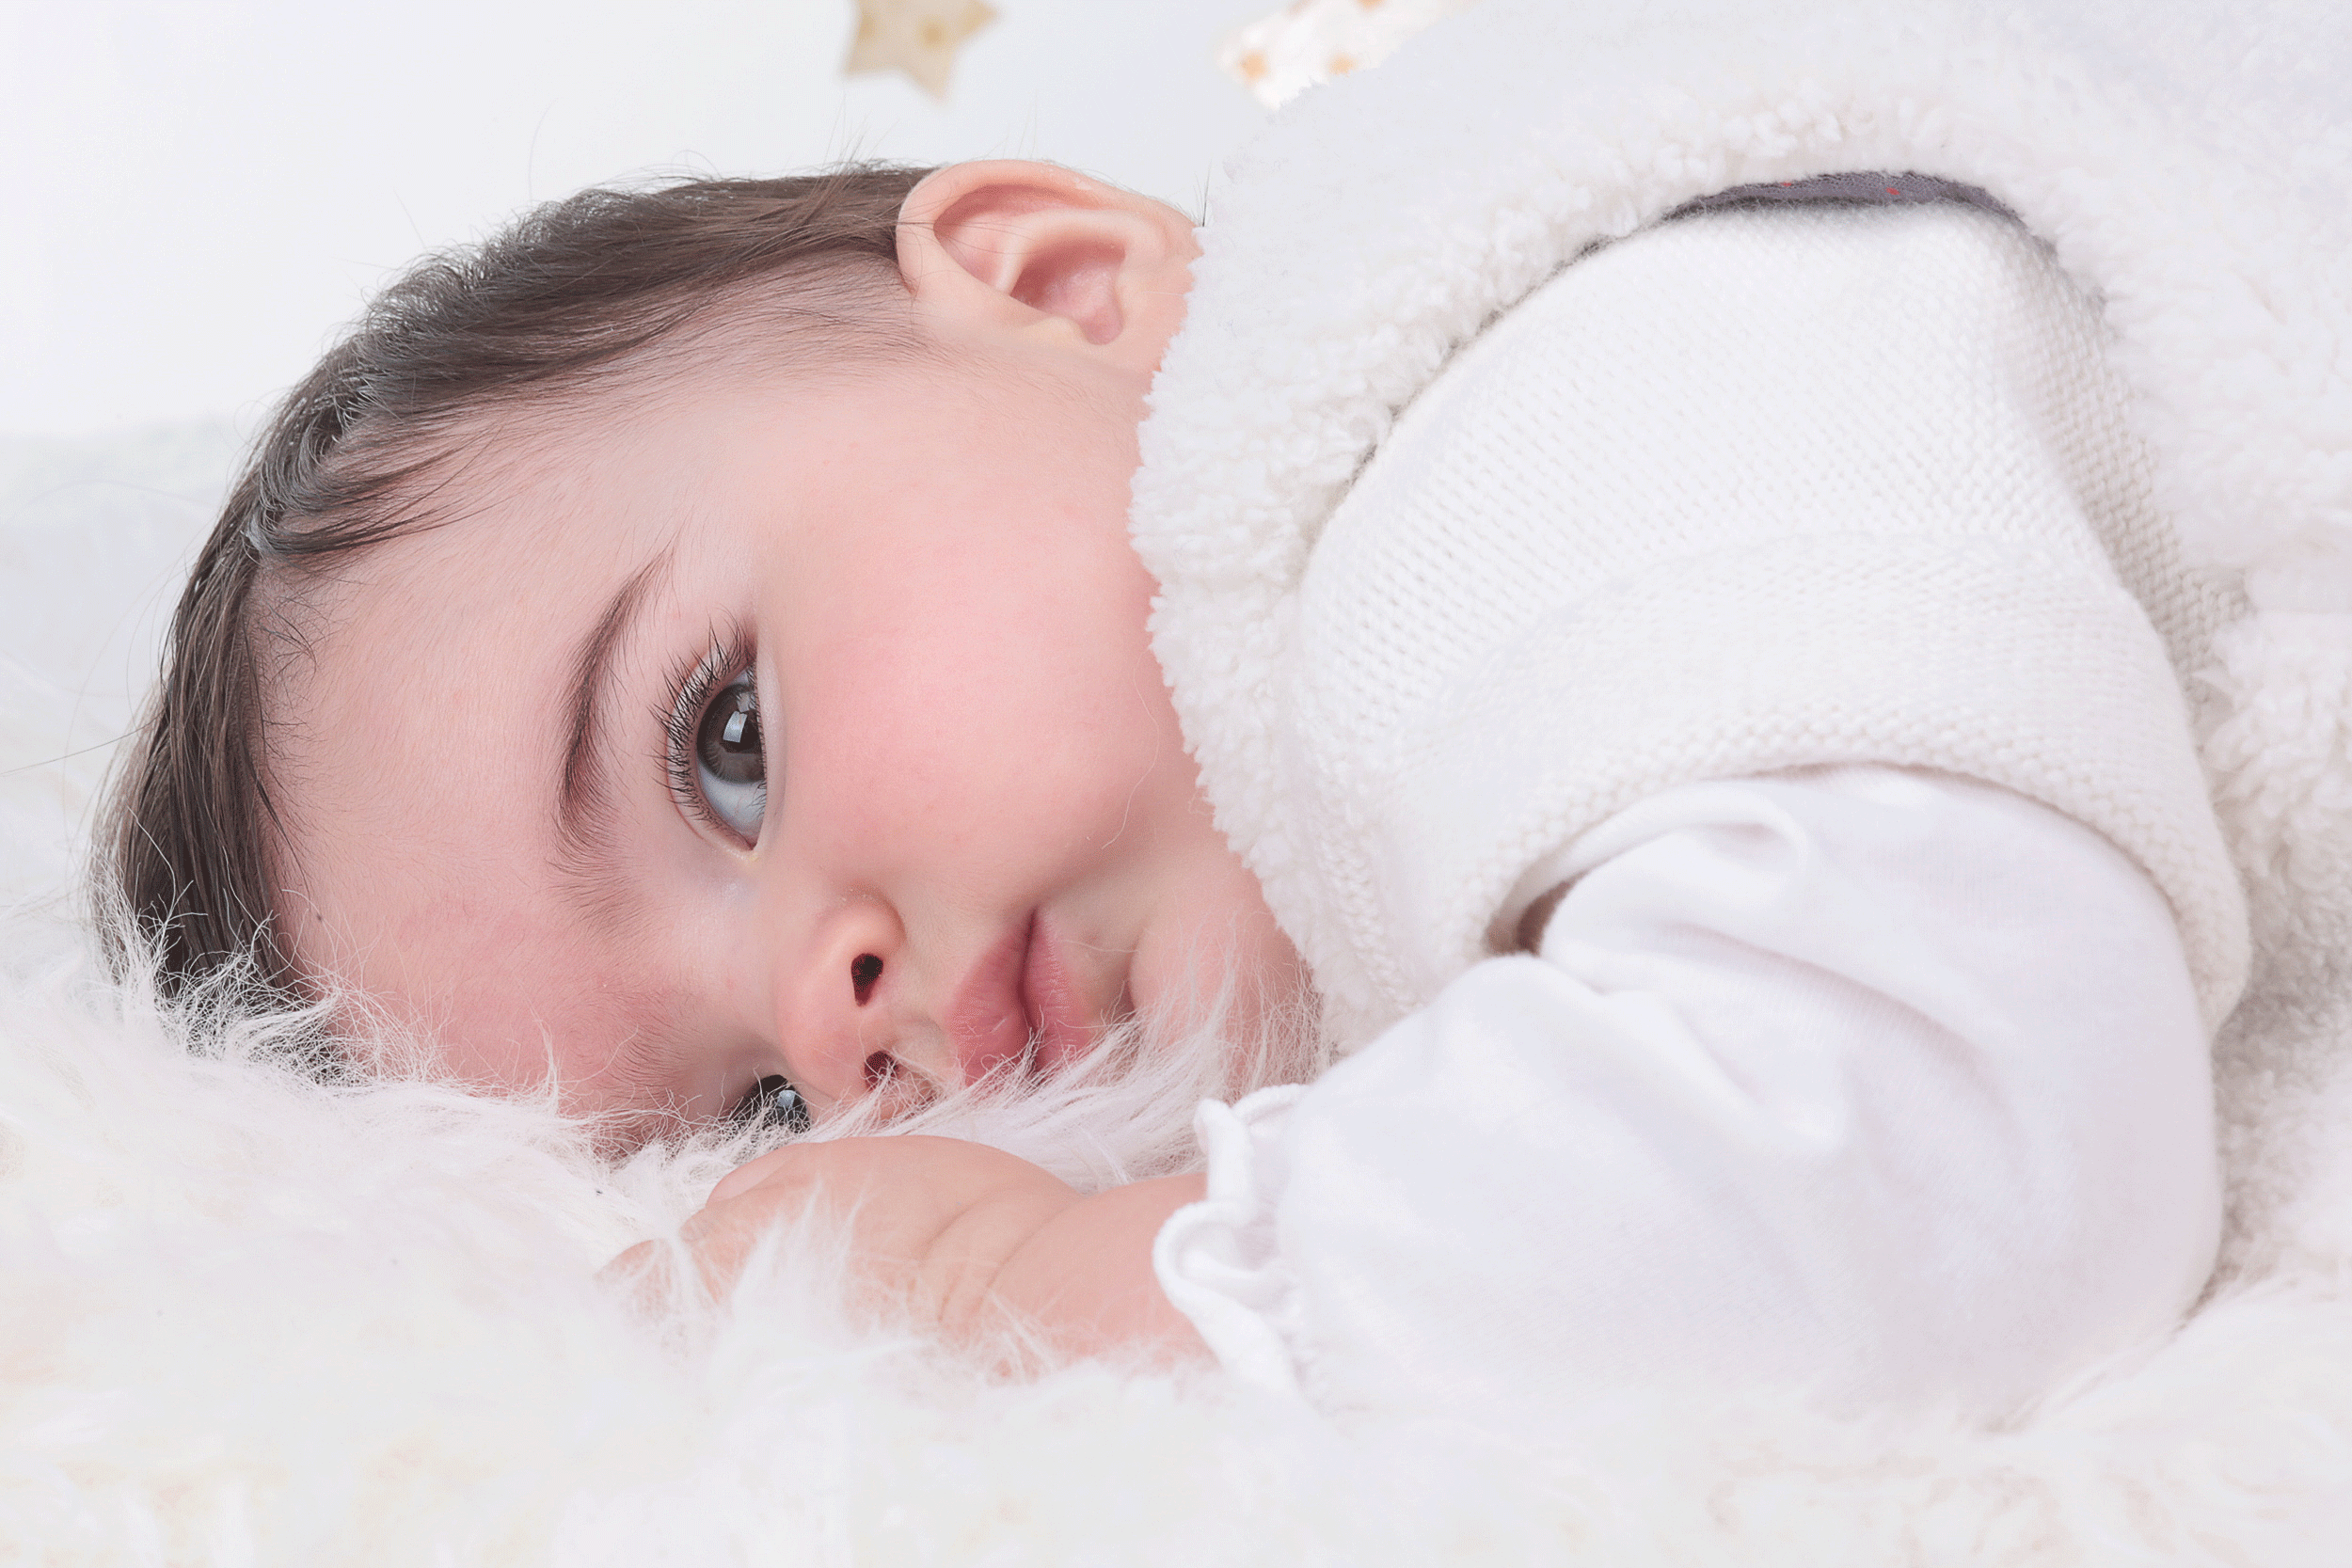 Mannequin bébé dans une agence de mannequin enfant